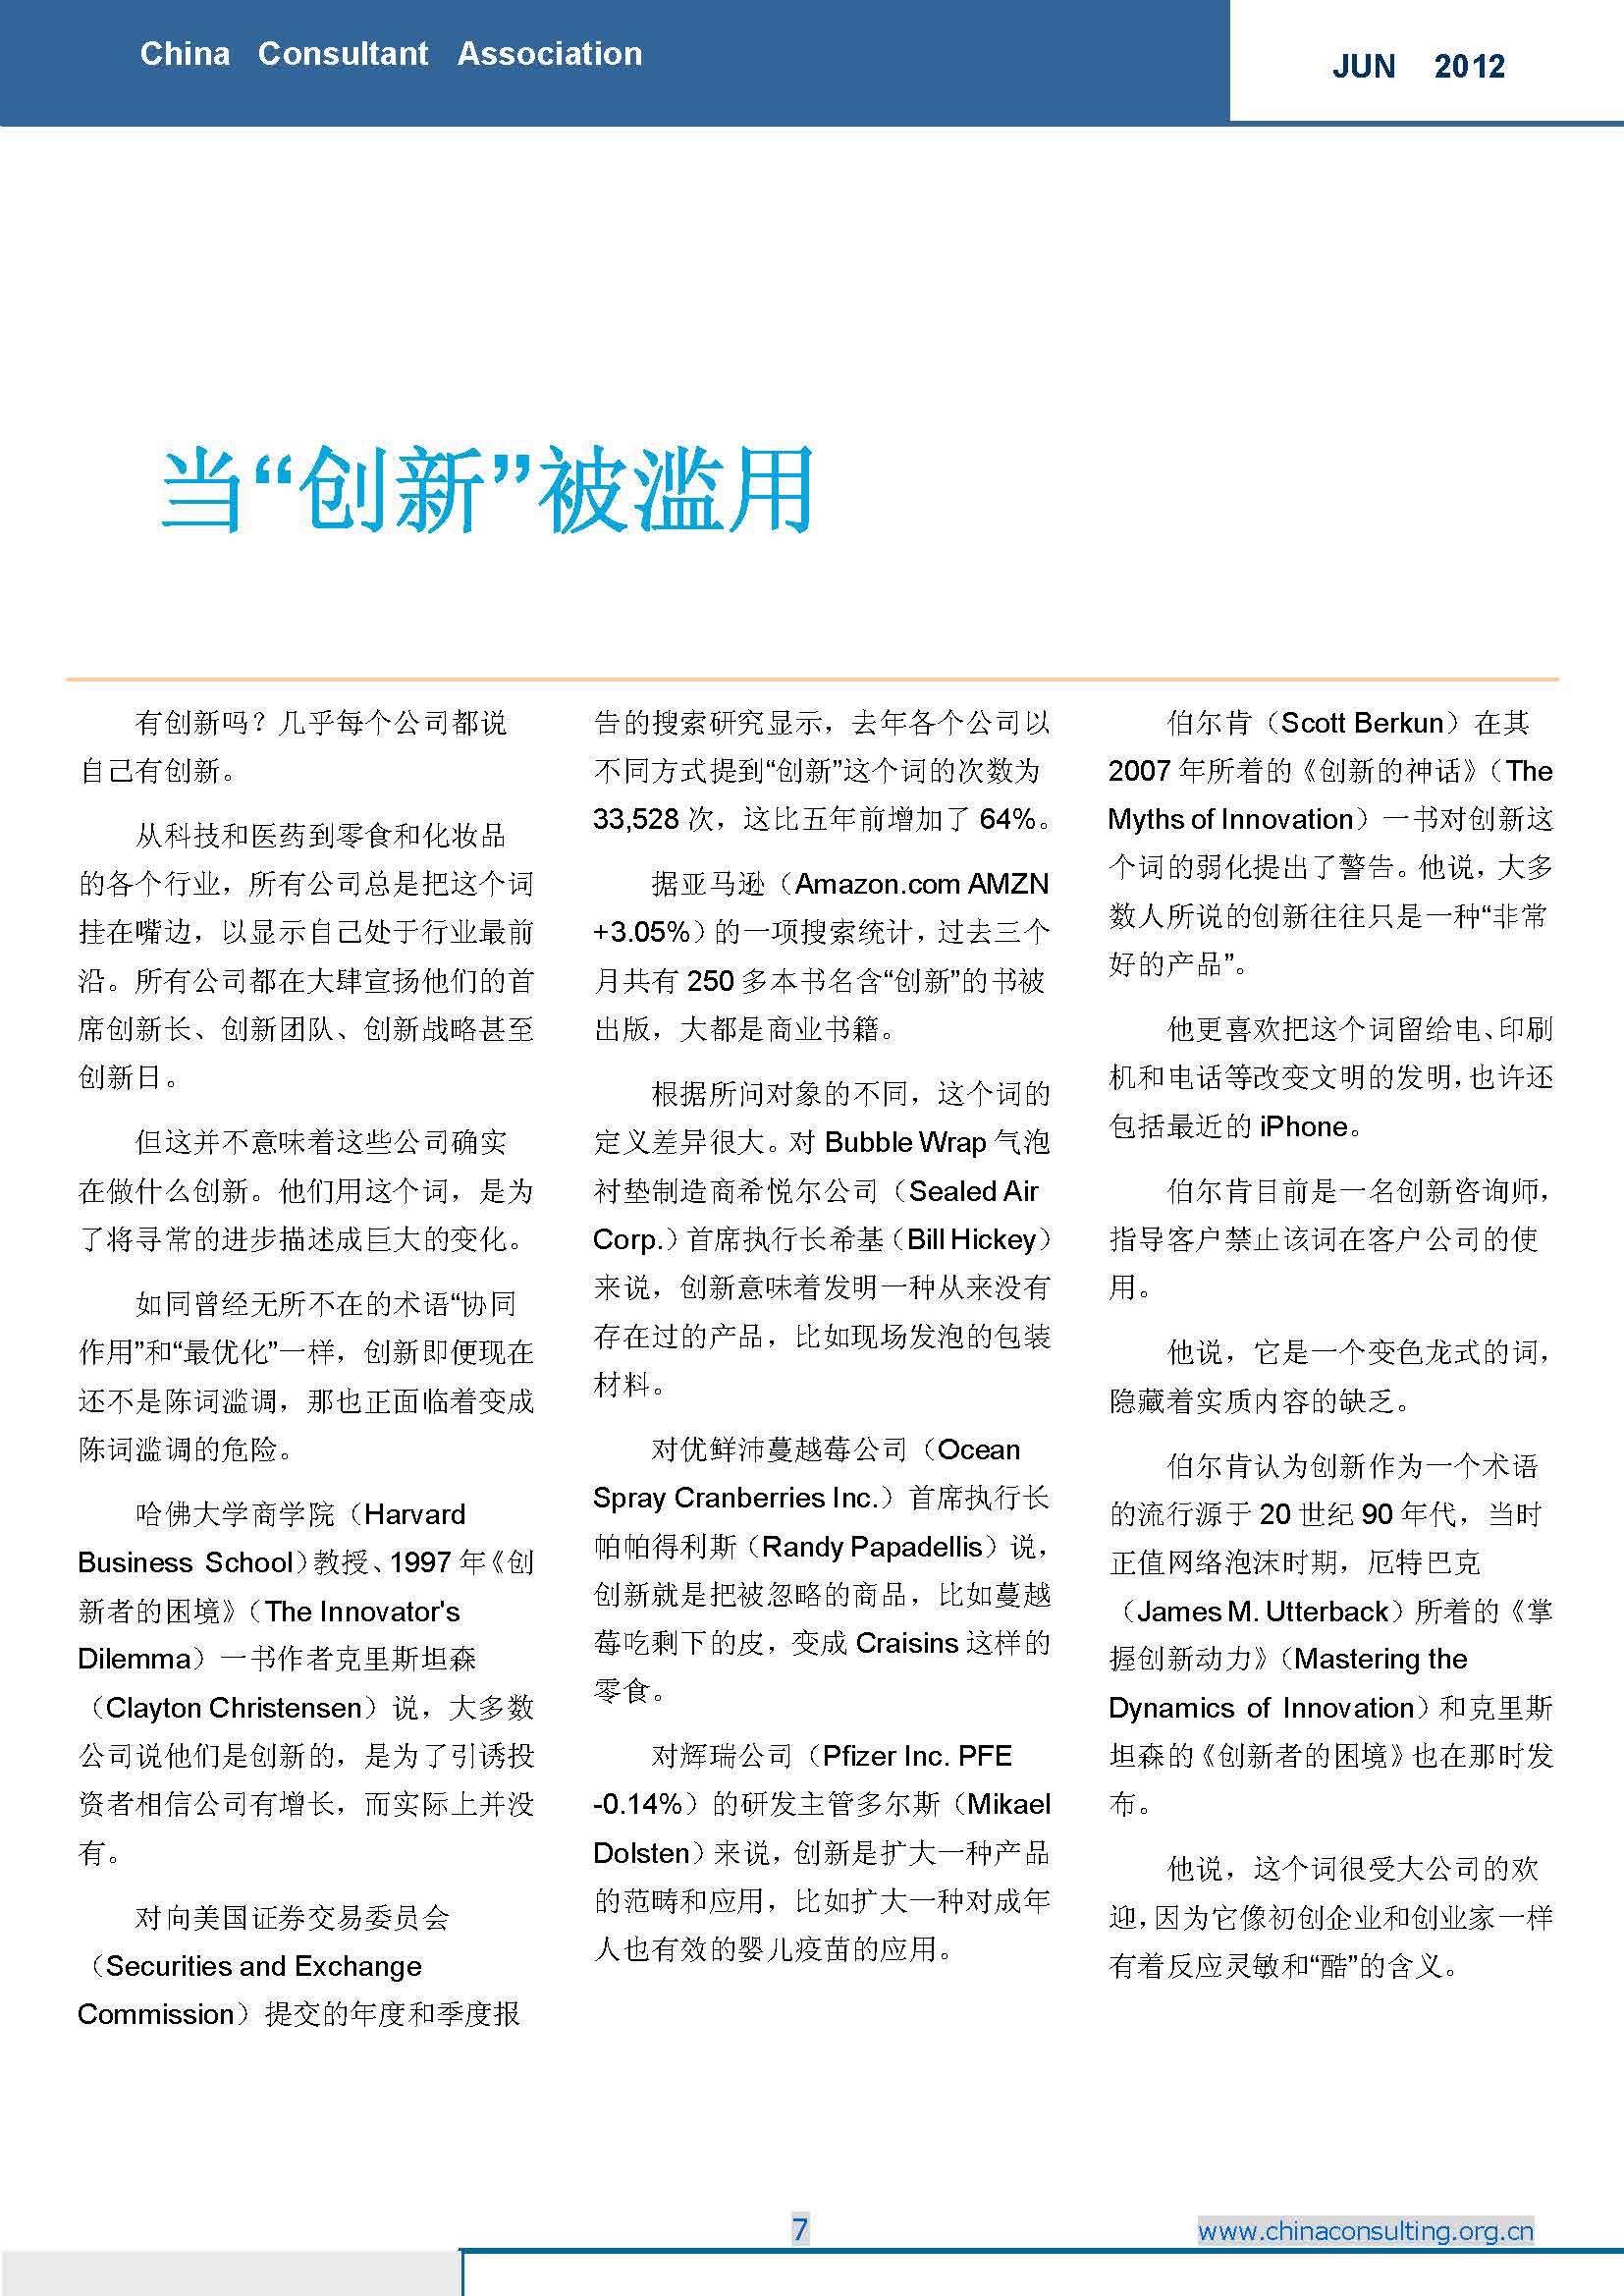 7中国科技咨询协会国际快讯（第七期）_页面_09.jpg